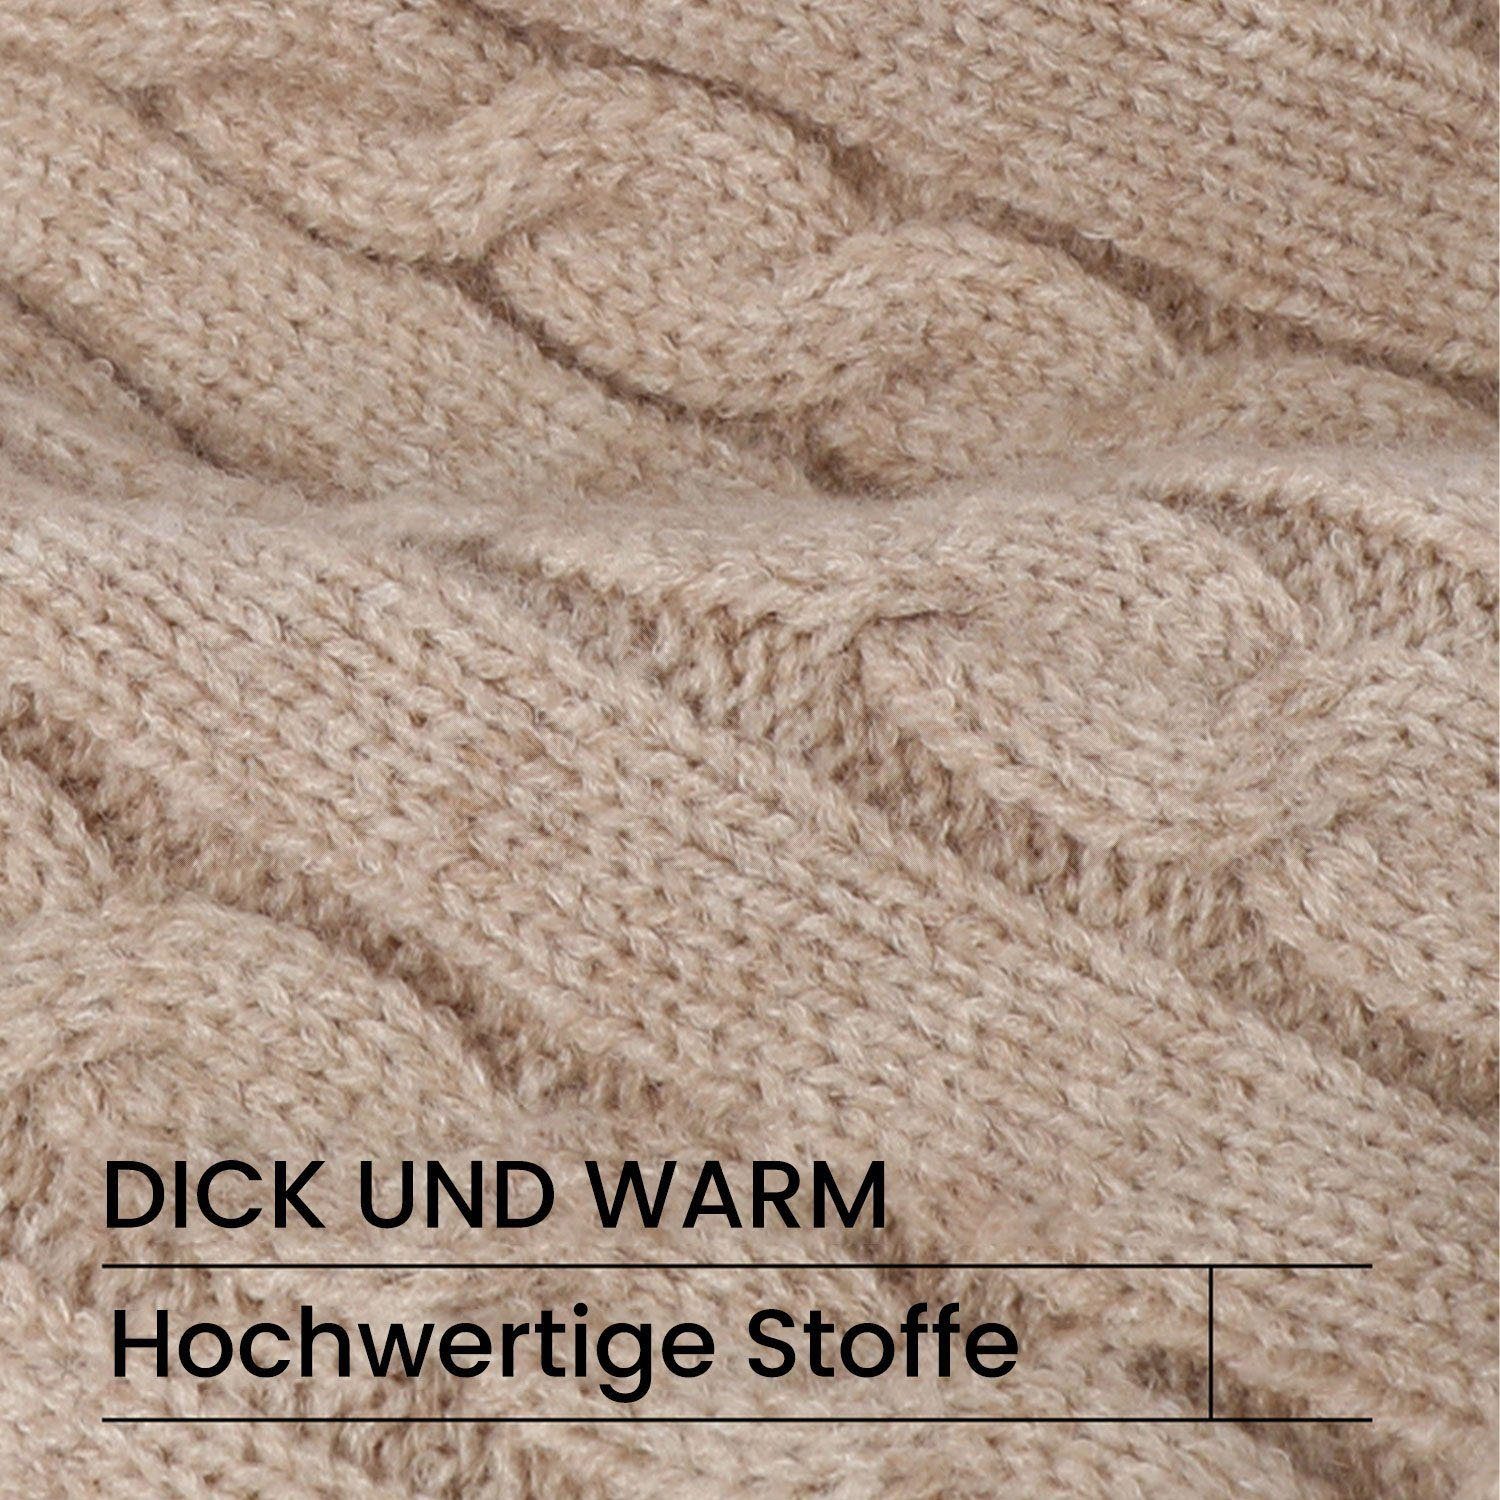 & Set Lang und Daisred Schal Mütze Schwarz Winter Mütze Handschuhe Schal Touchscreen